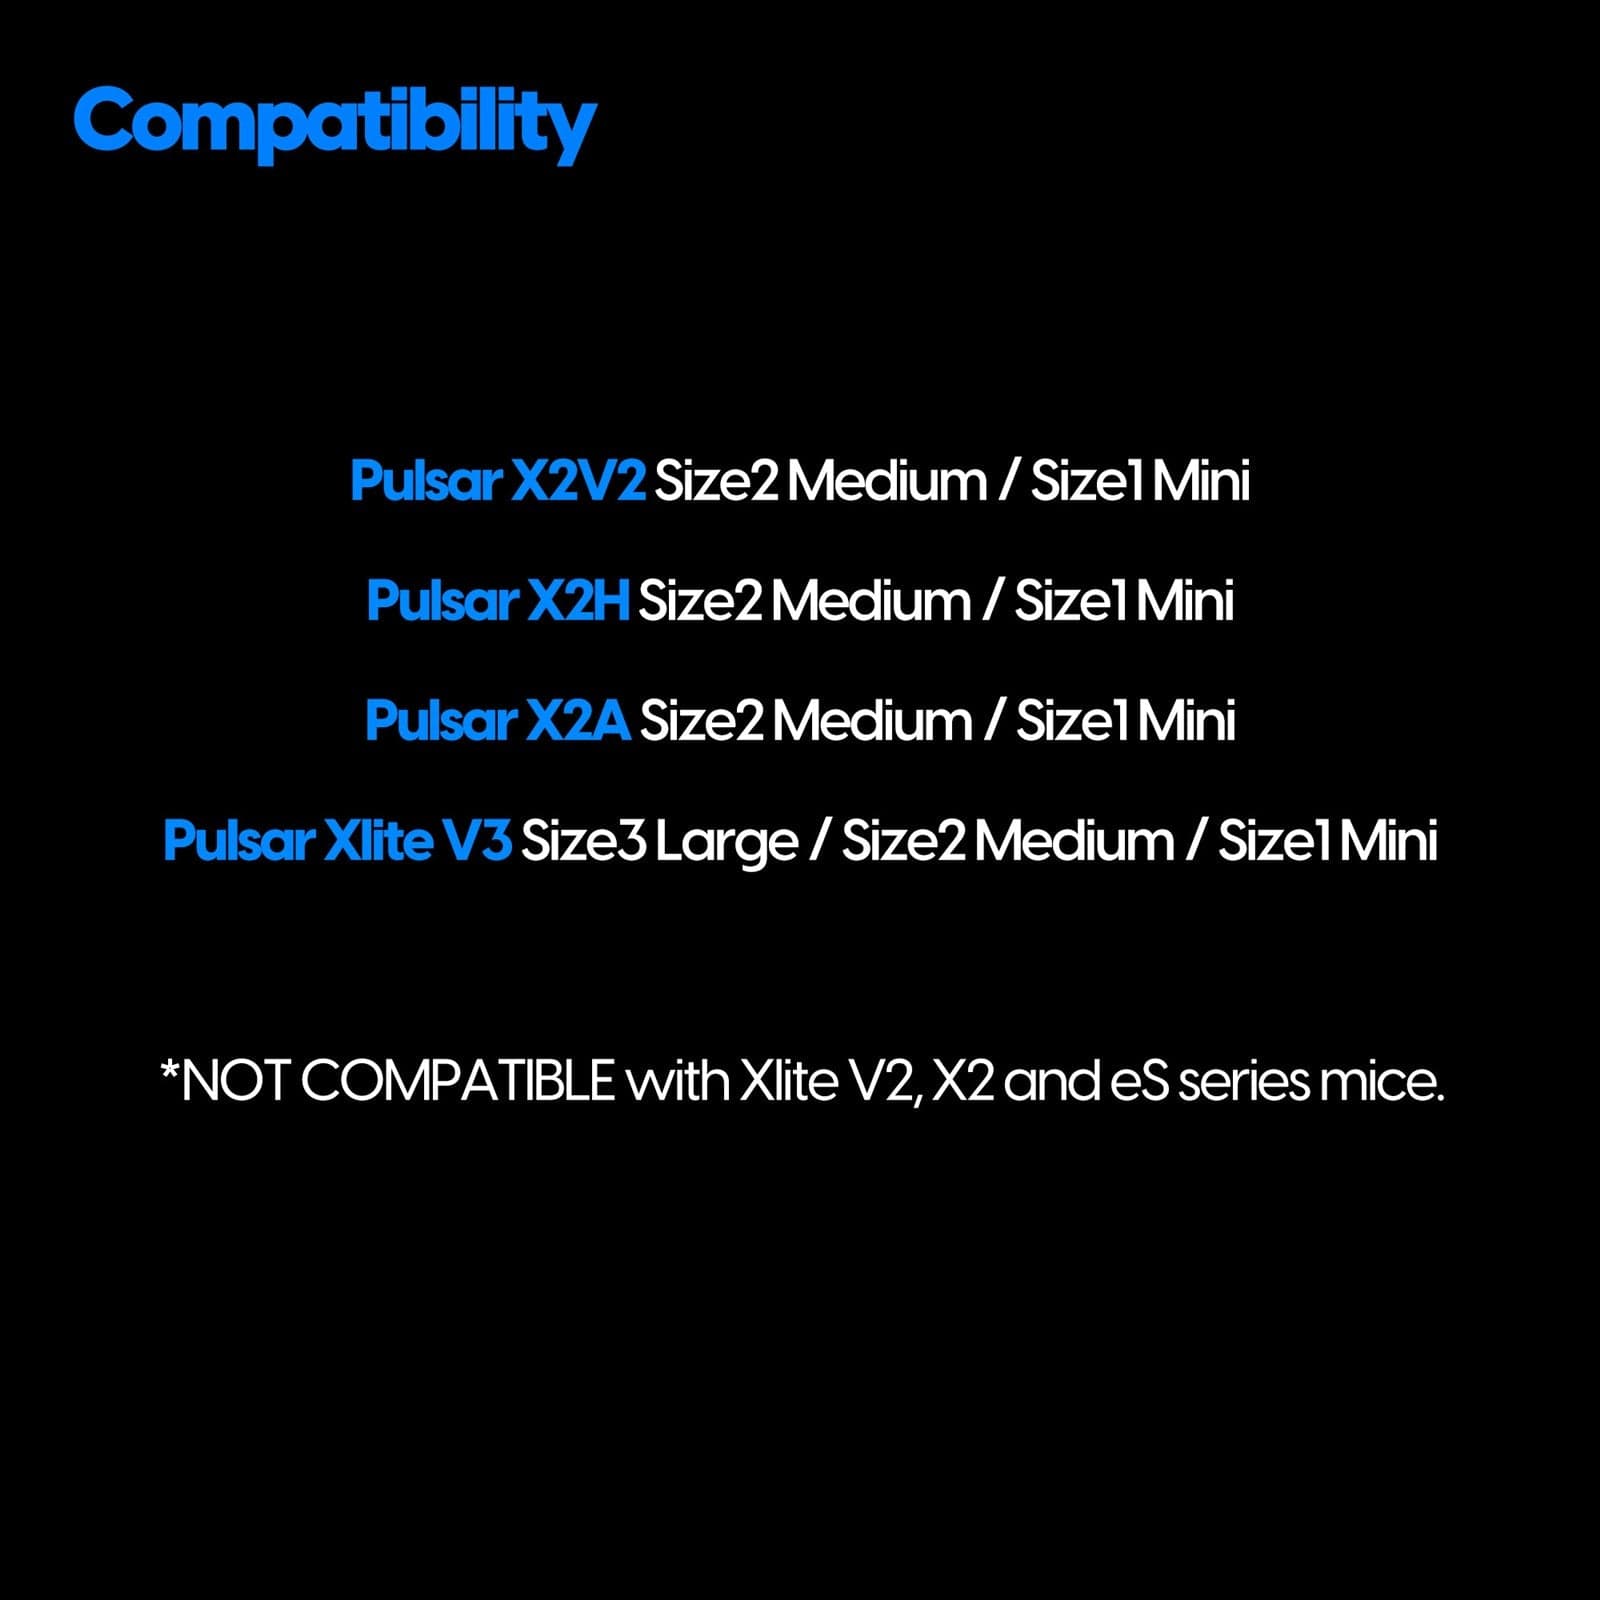 Receiver 4KHz cho chuột Pulsar 4K - Chỉ hỗ trợ dòng tương thích 4KHz